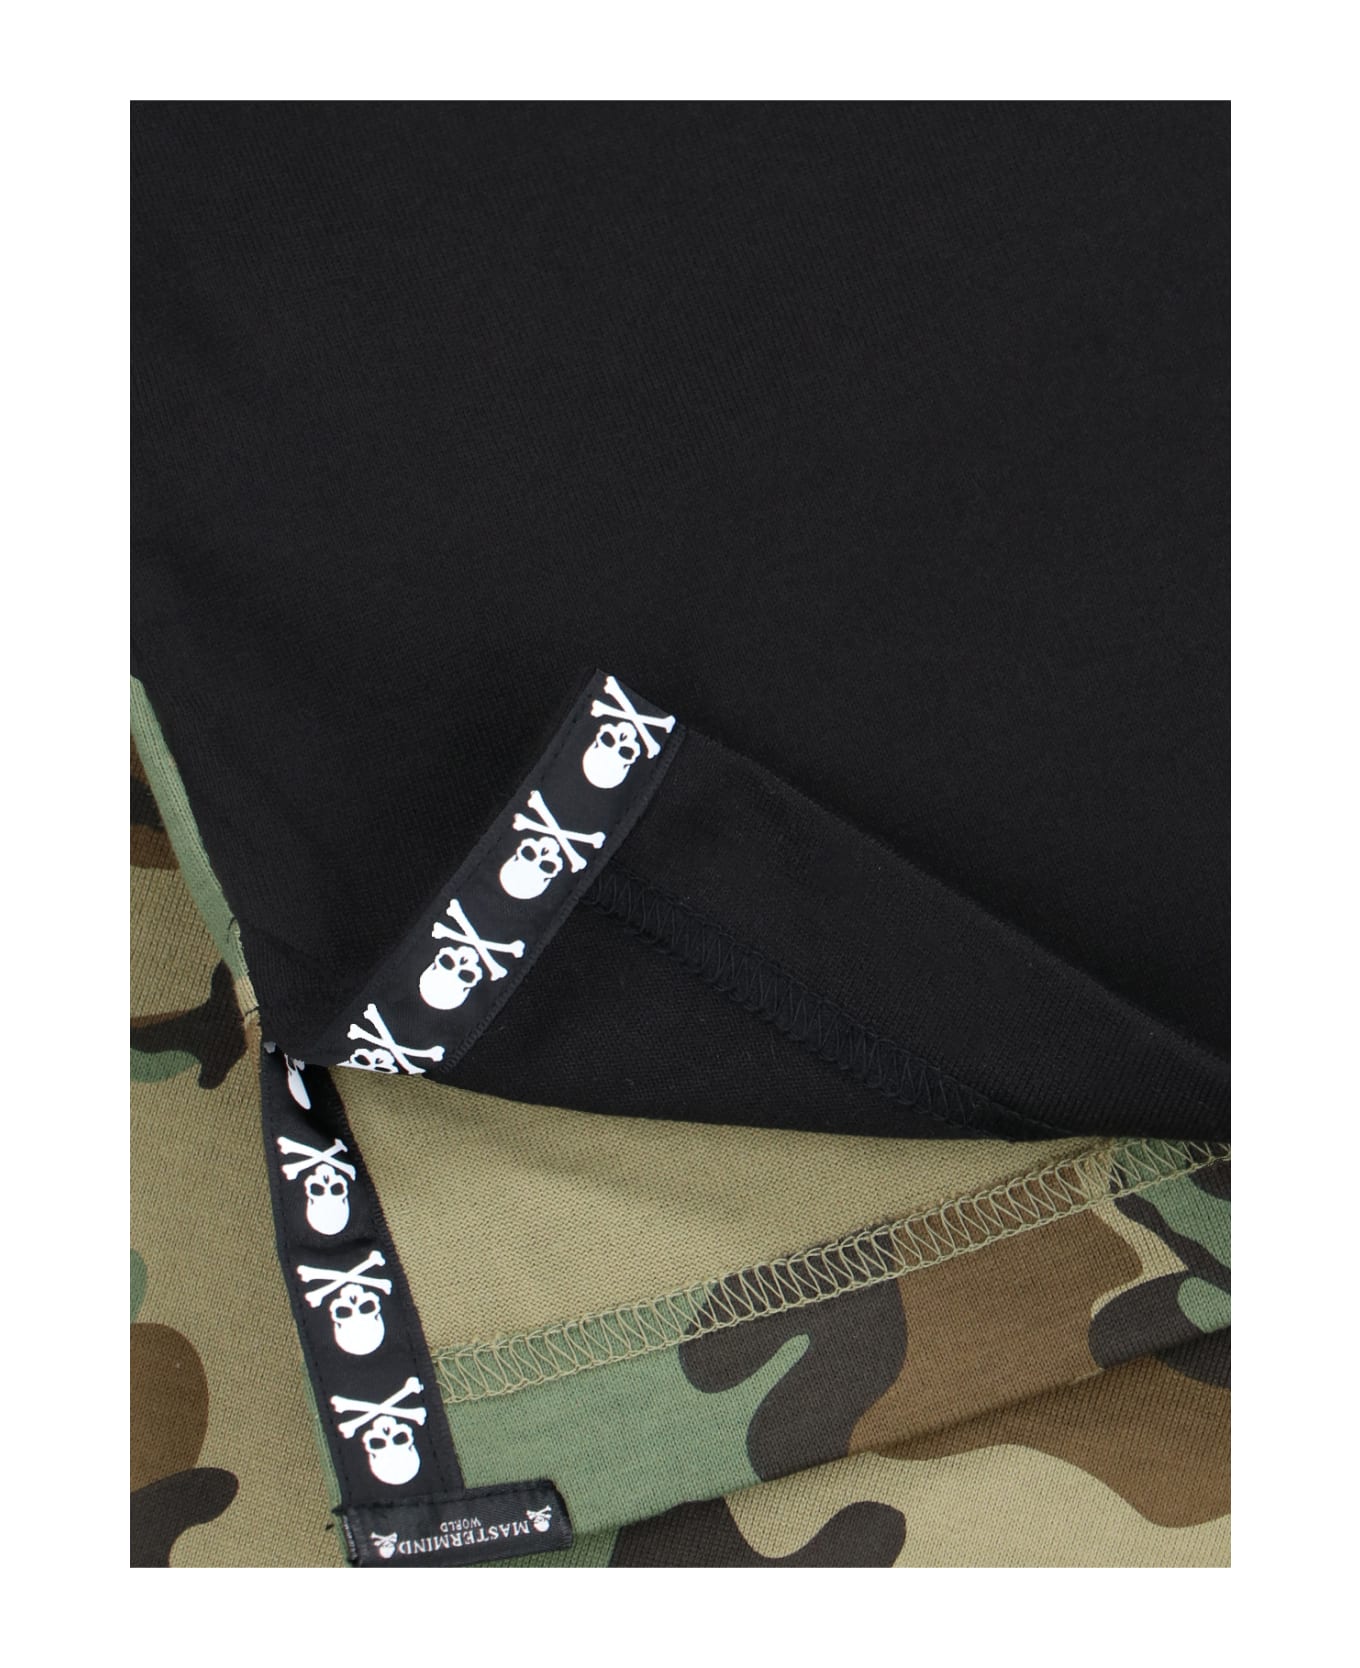 MASTERMIND WORLD Back Camouflage T-shirt - Black  